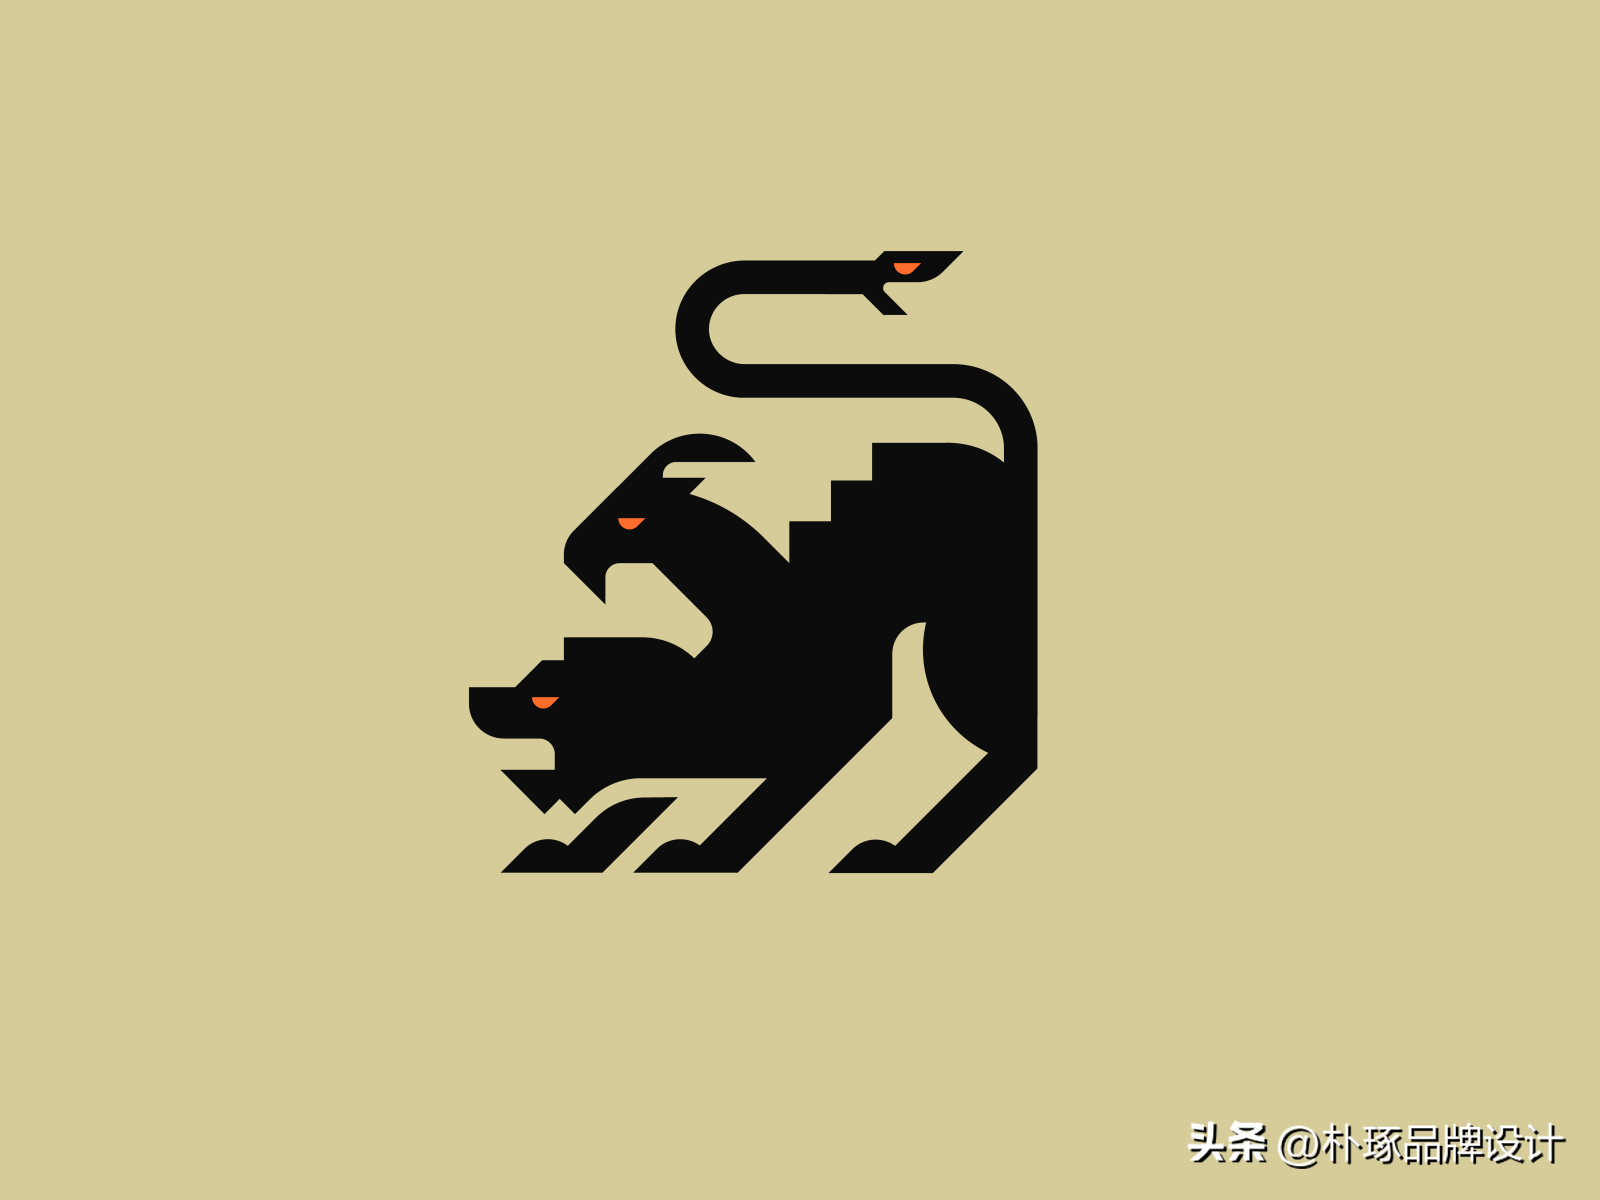 霸气外漏 54款狮子创意logo设计创意分享